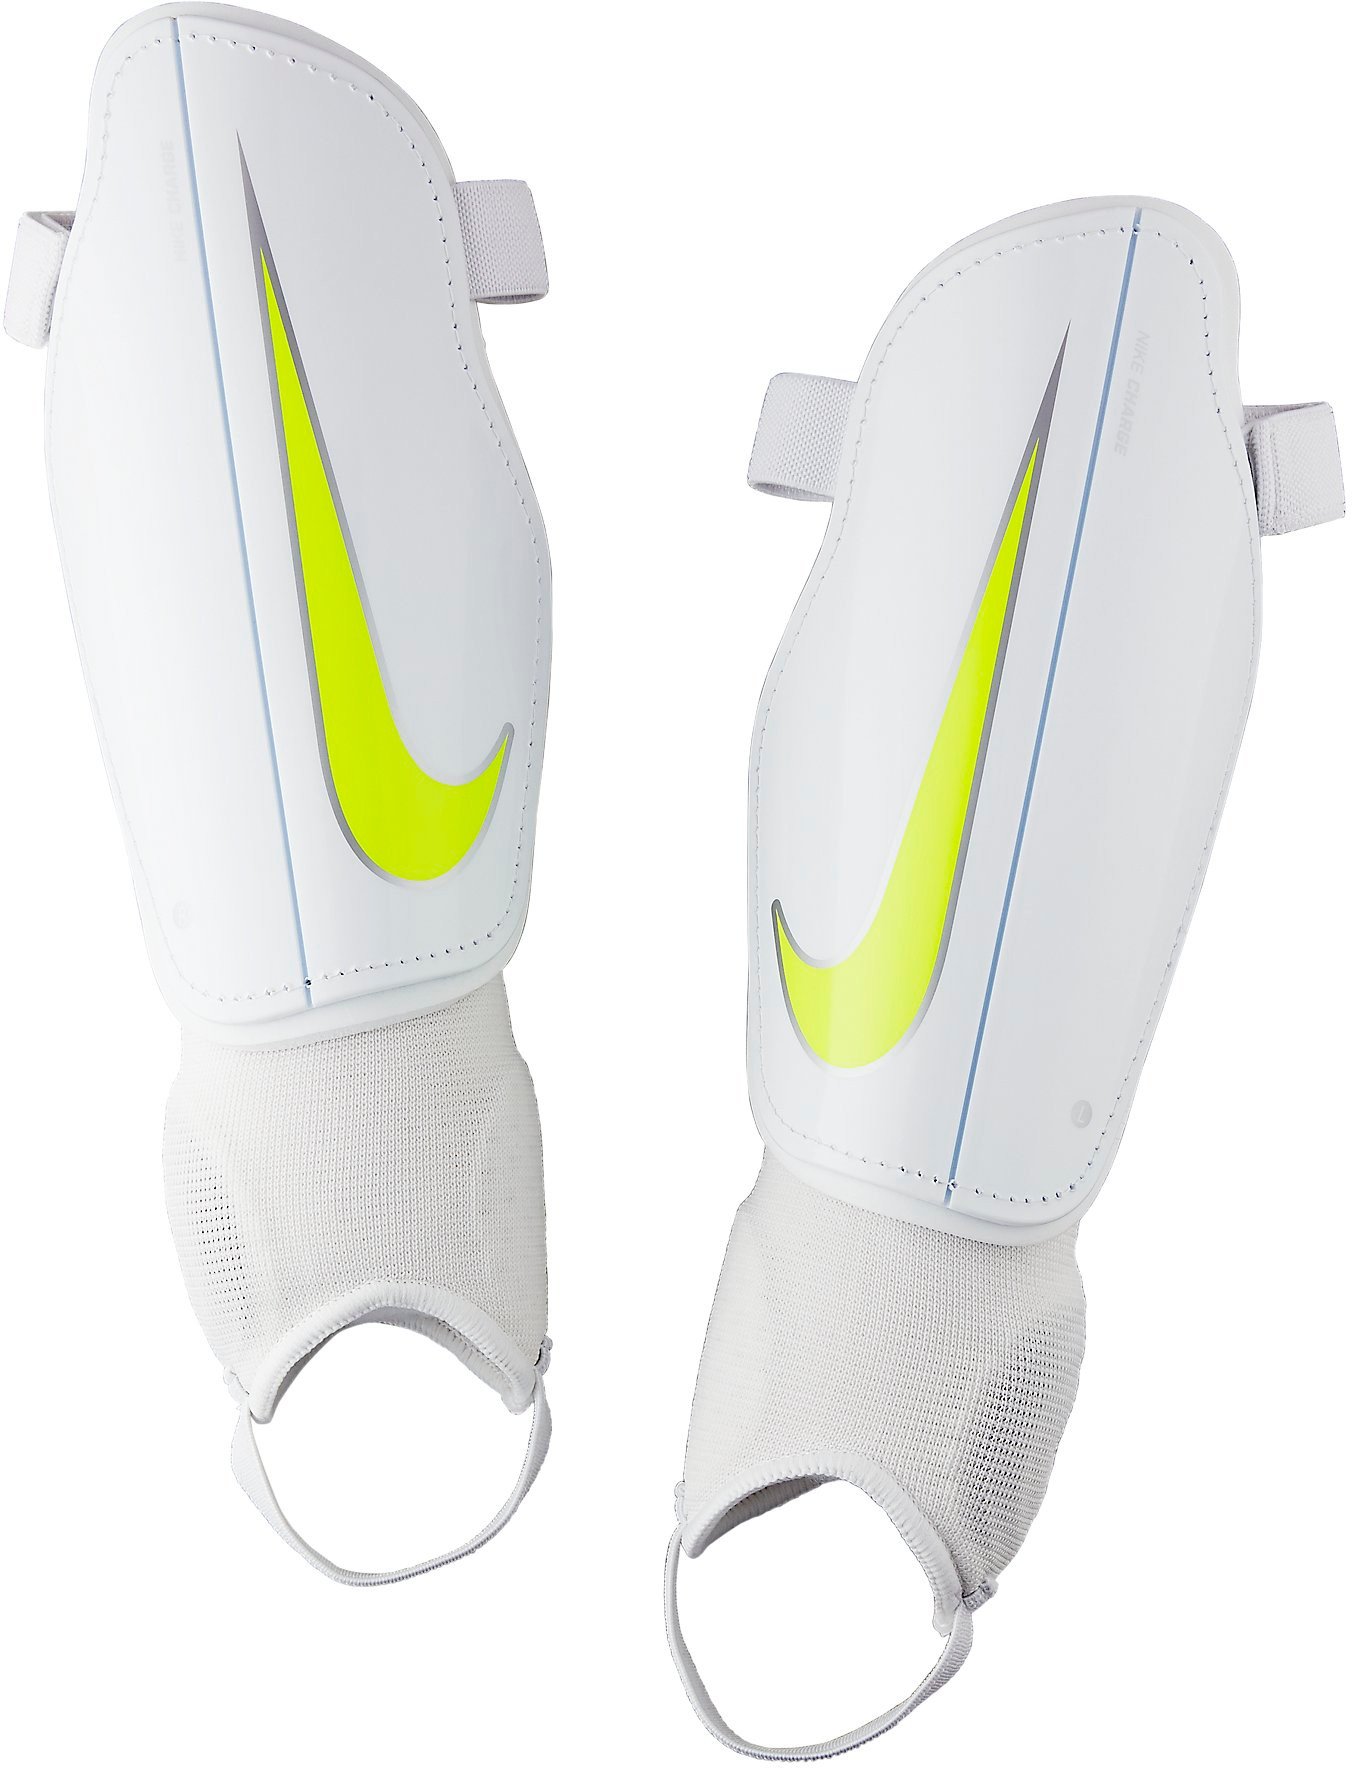 Holenní chrániče Nike Charge 2.0